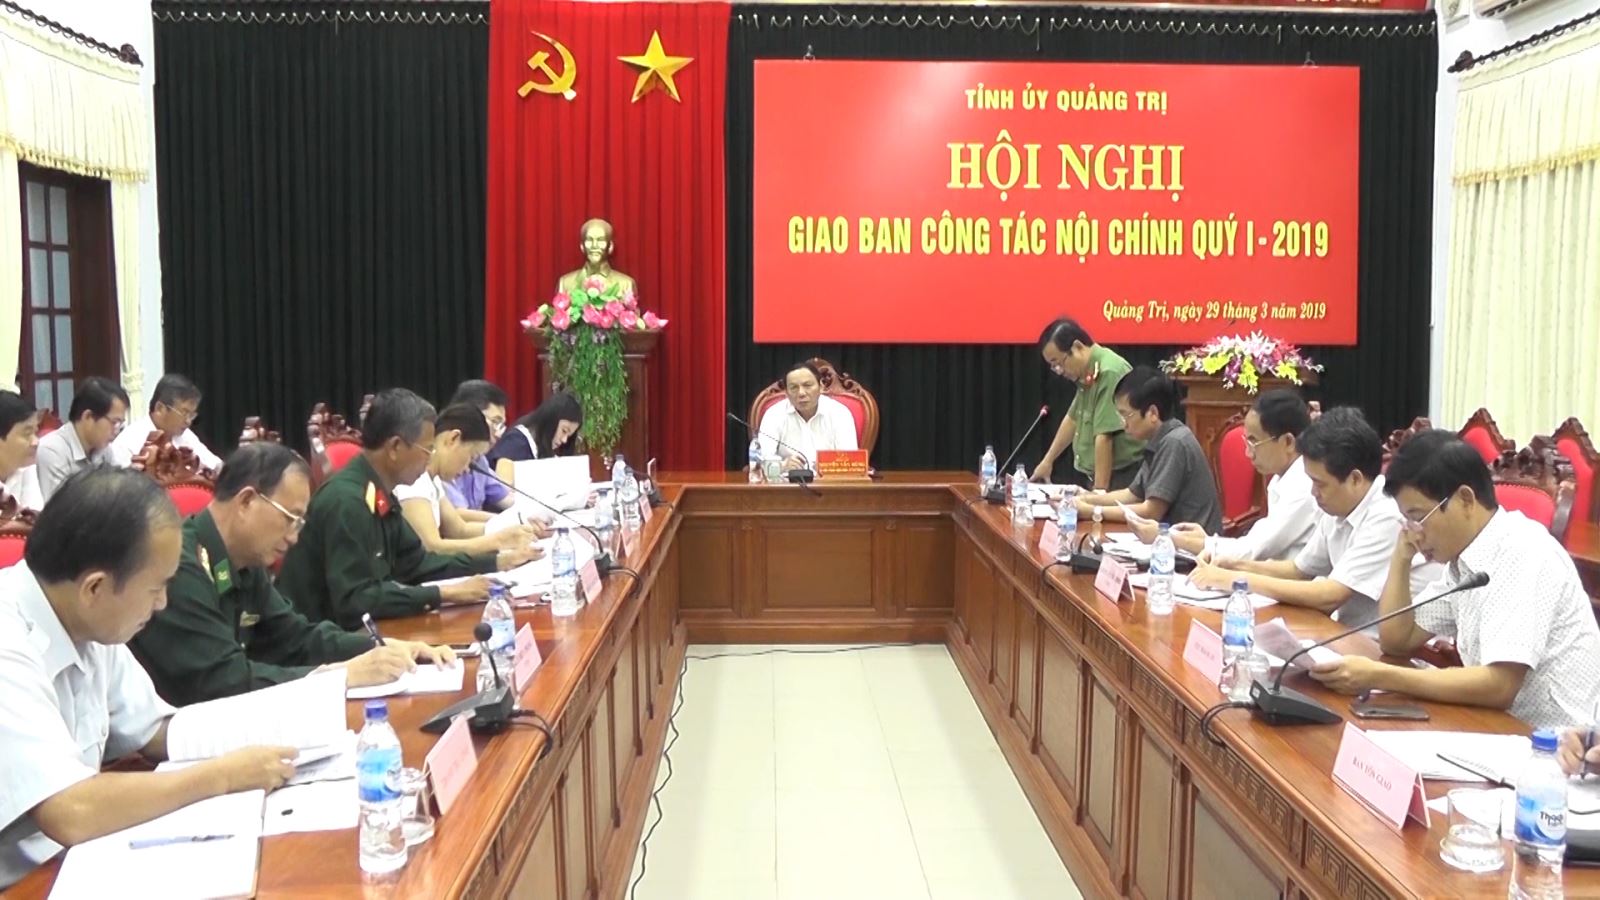 Ban Thường vụ Tỉnh ủy Quảng Trị tăng cường sự lãnh đạo của cấp ủy Đảng đối với công tác nội chính và phòng, chống tham nhũng